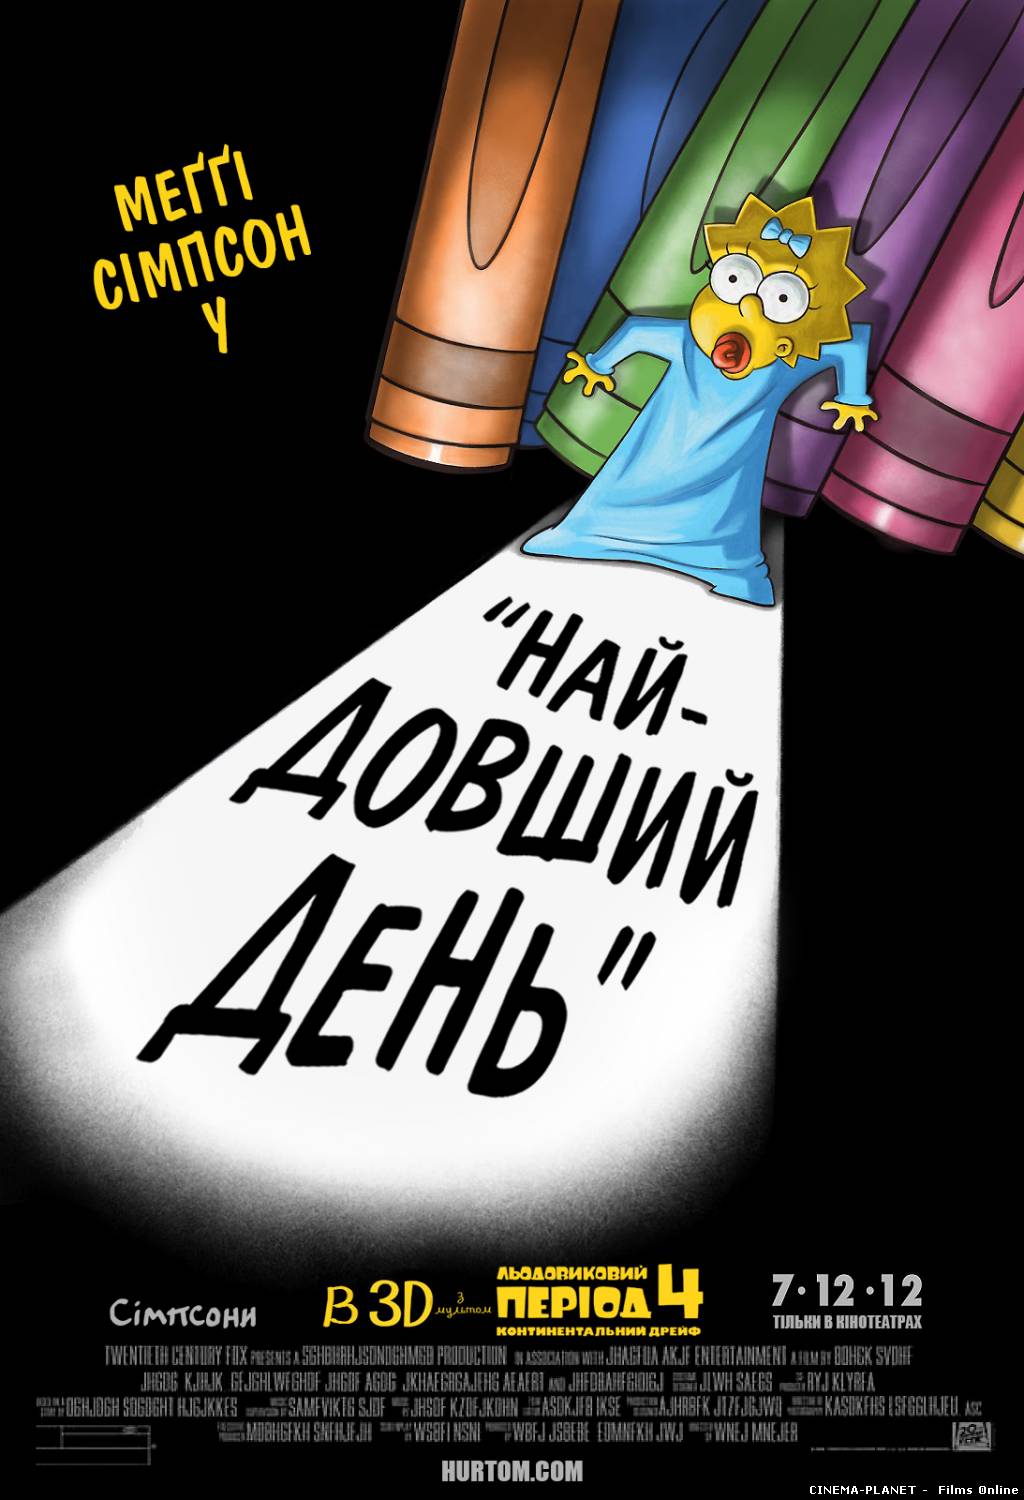 Сімпсони: найдовший день [HD 720p] / The Simpsons: The Longest Daycare [HD 720p] (2012) українською онлайн без реєстрації